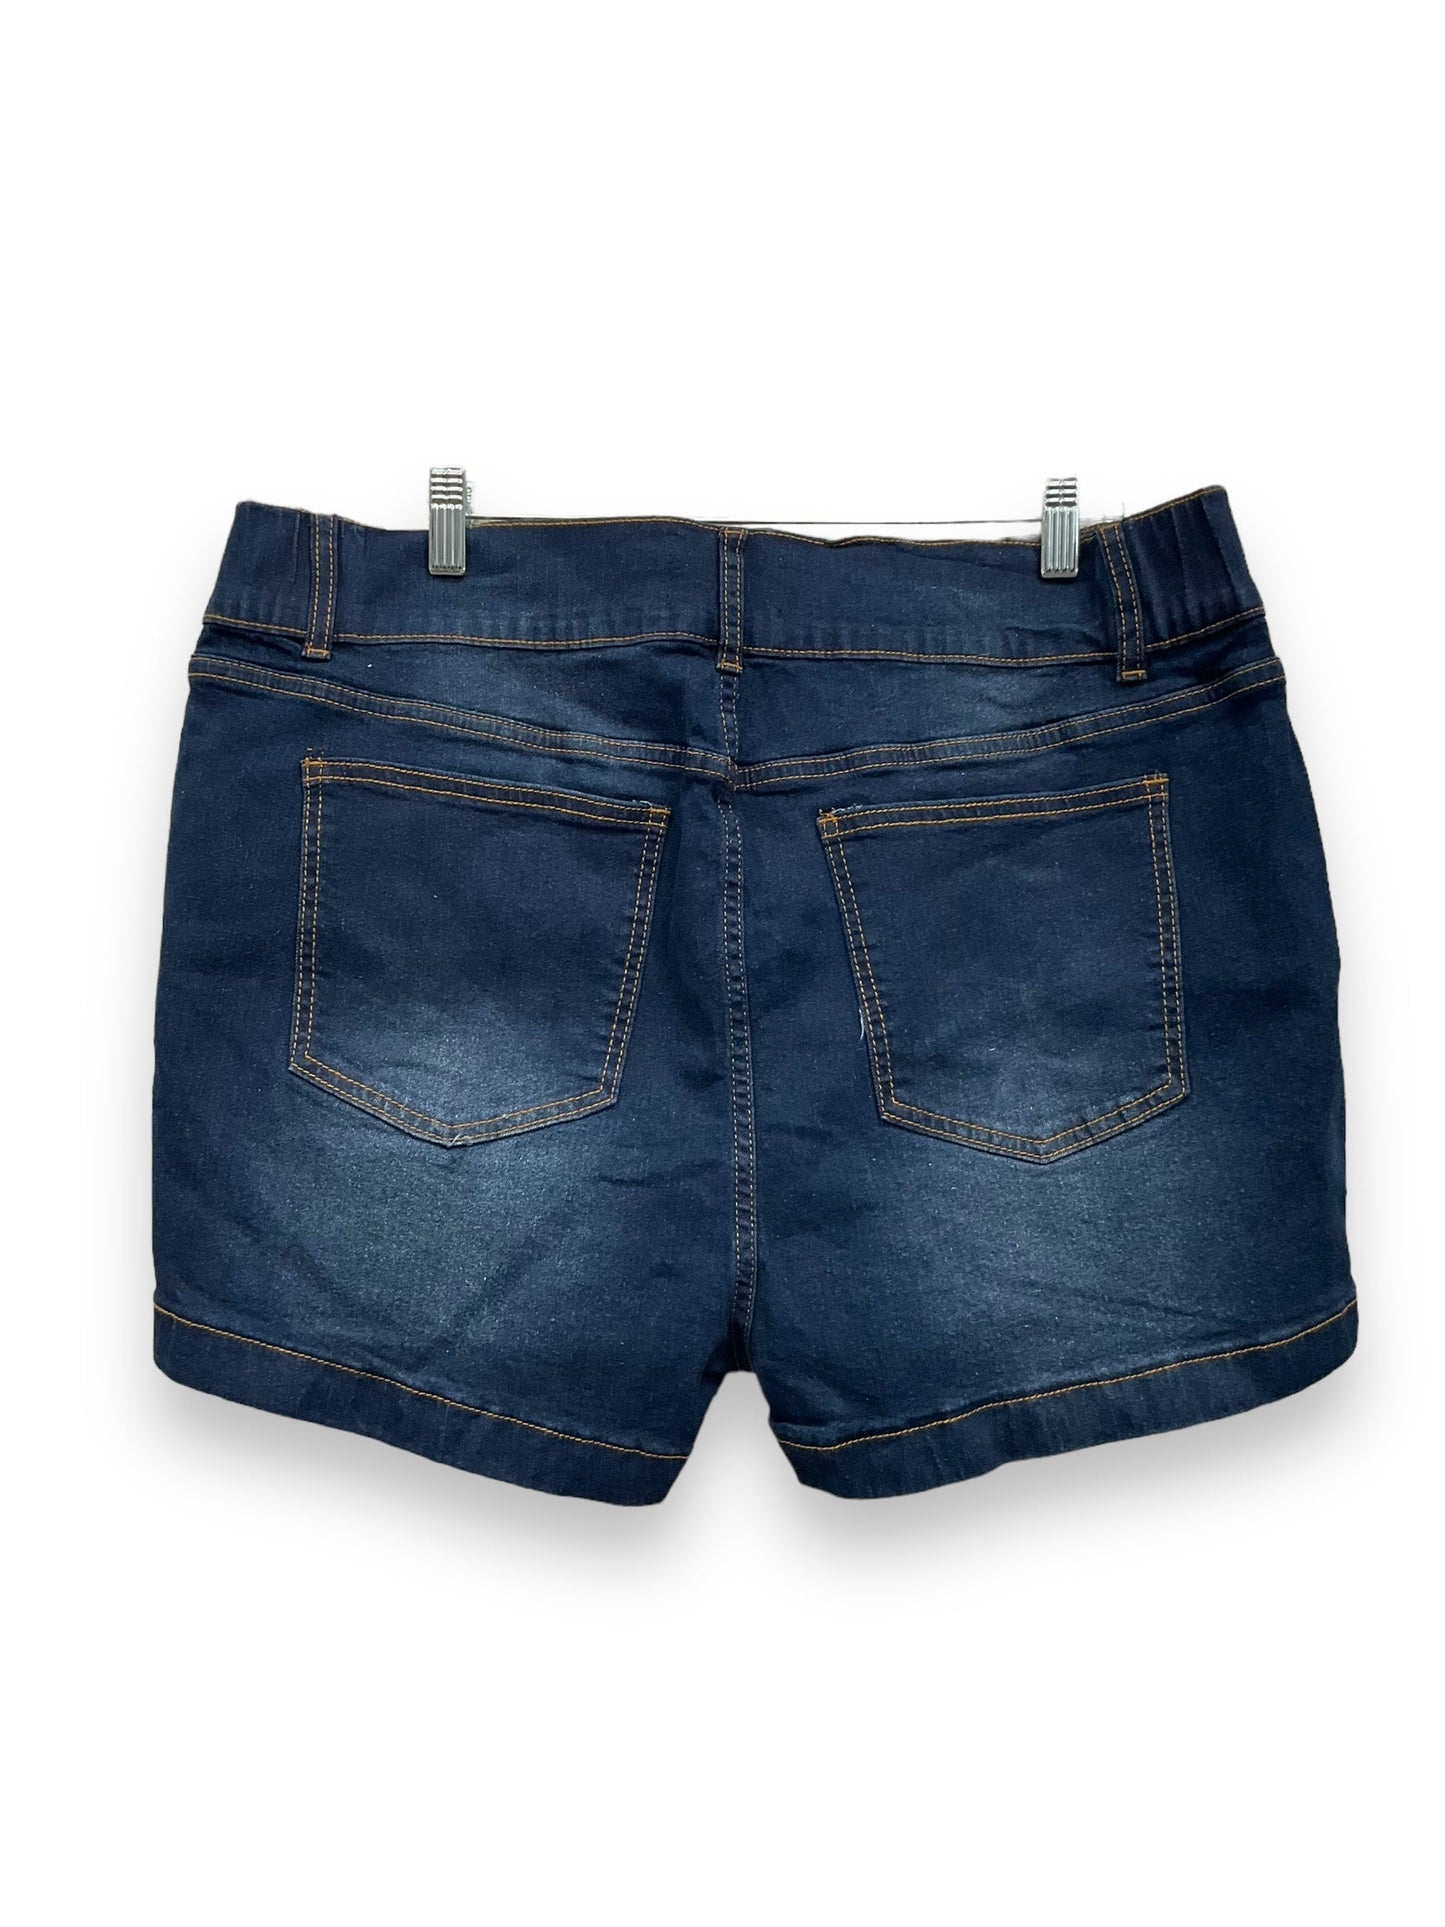 Blue Denim Shorts Clothes Mentor, Size 18